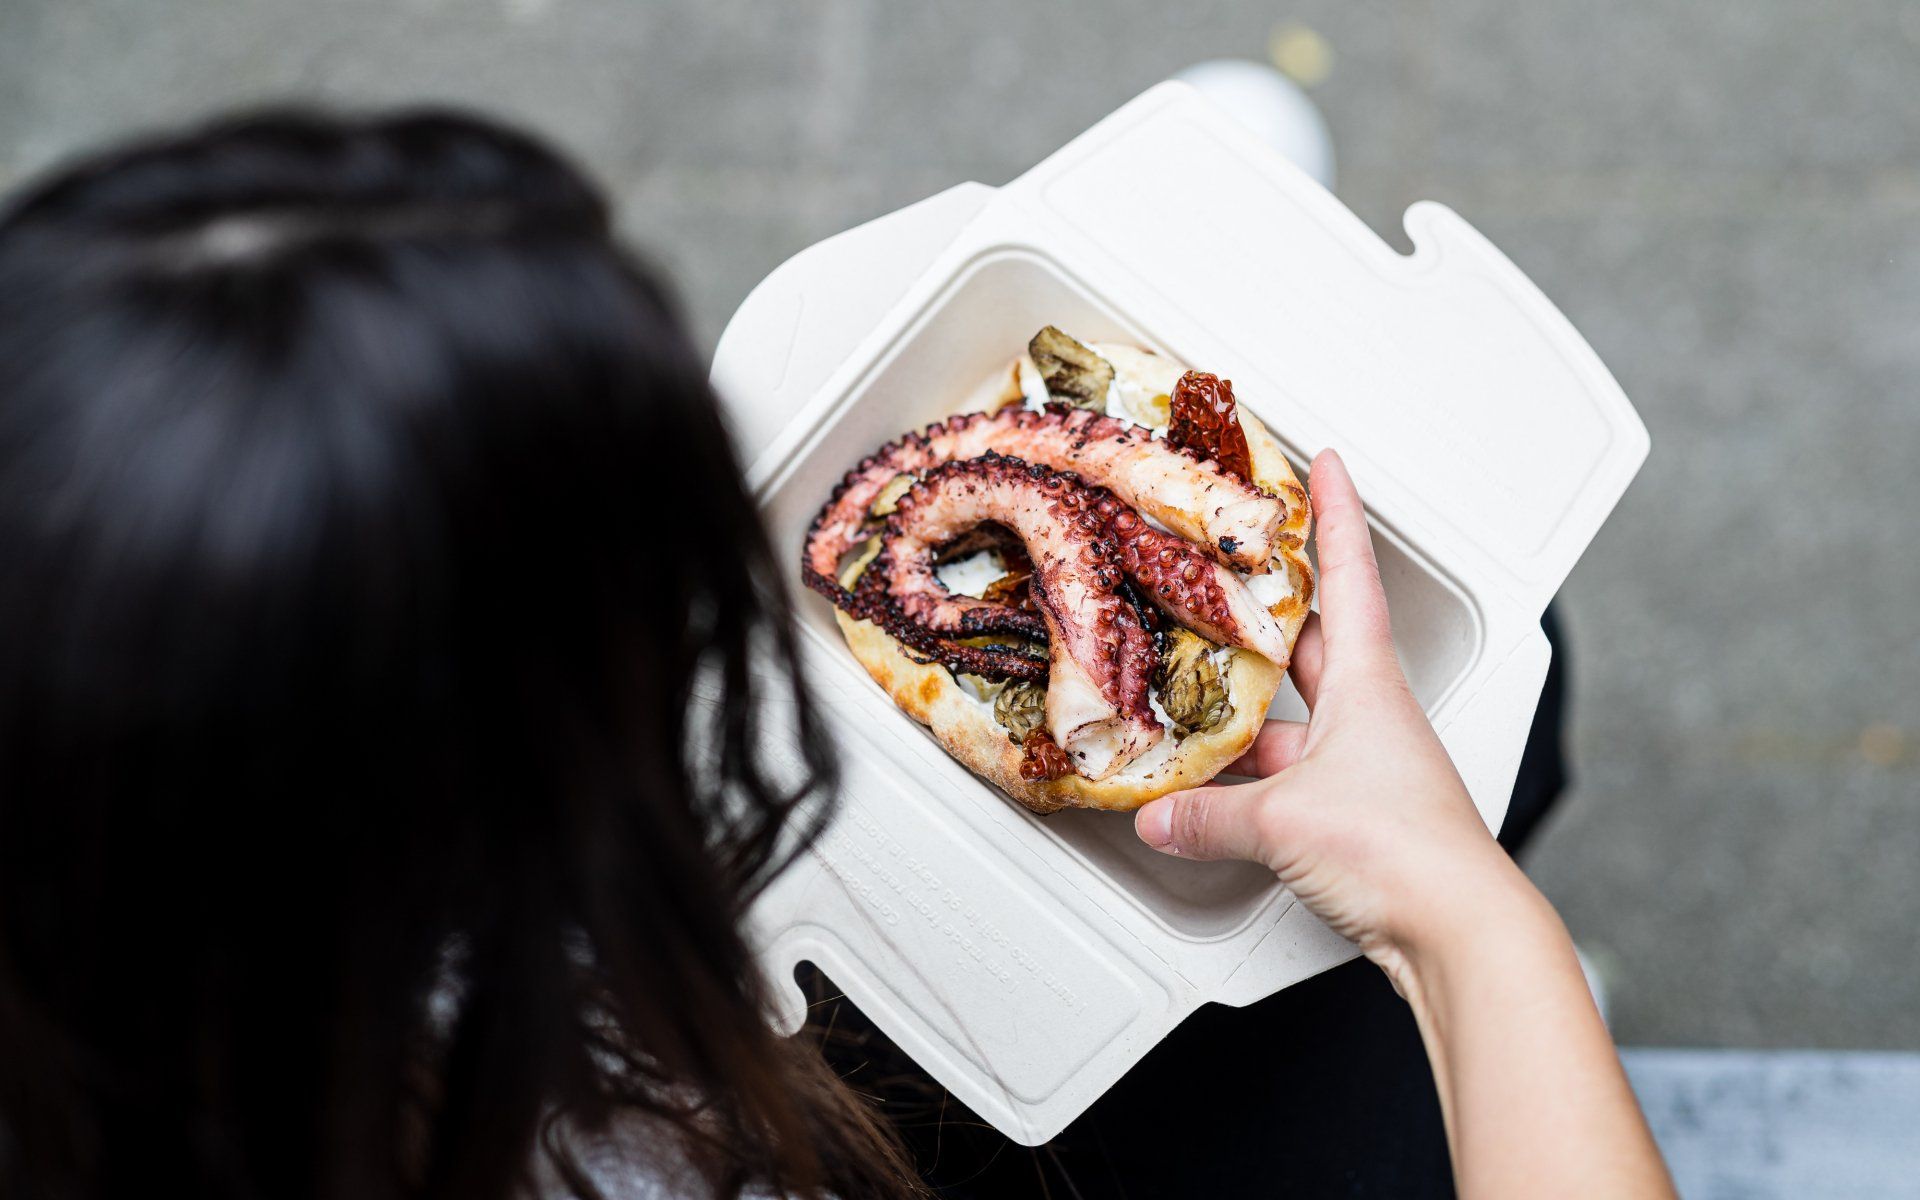 Octopus in duurzame verpakking - Productfotografie voor Biofutura